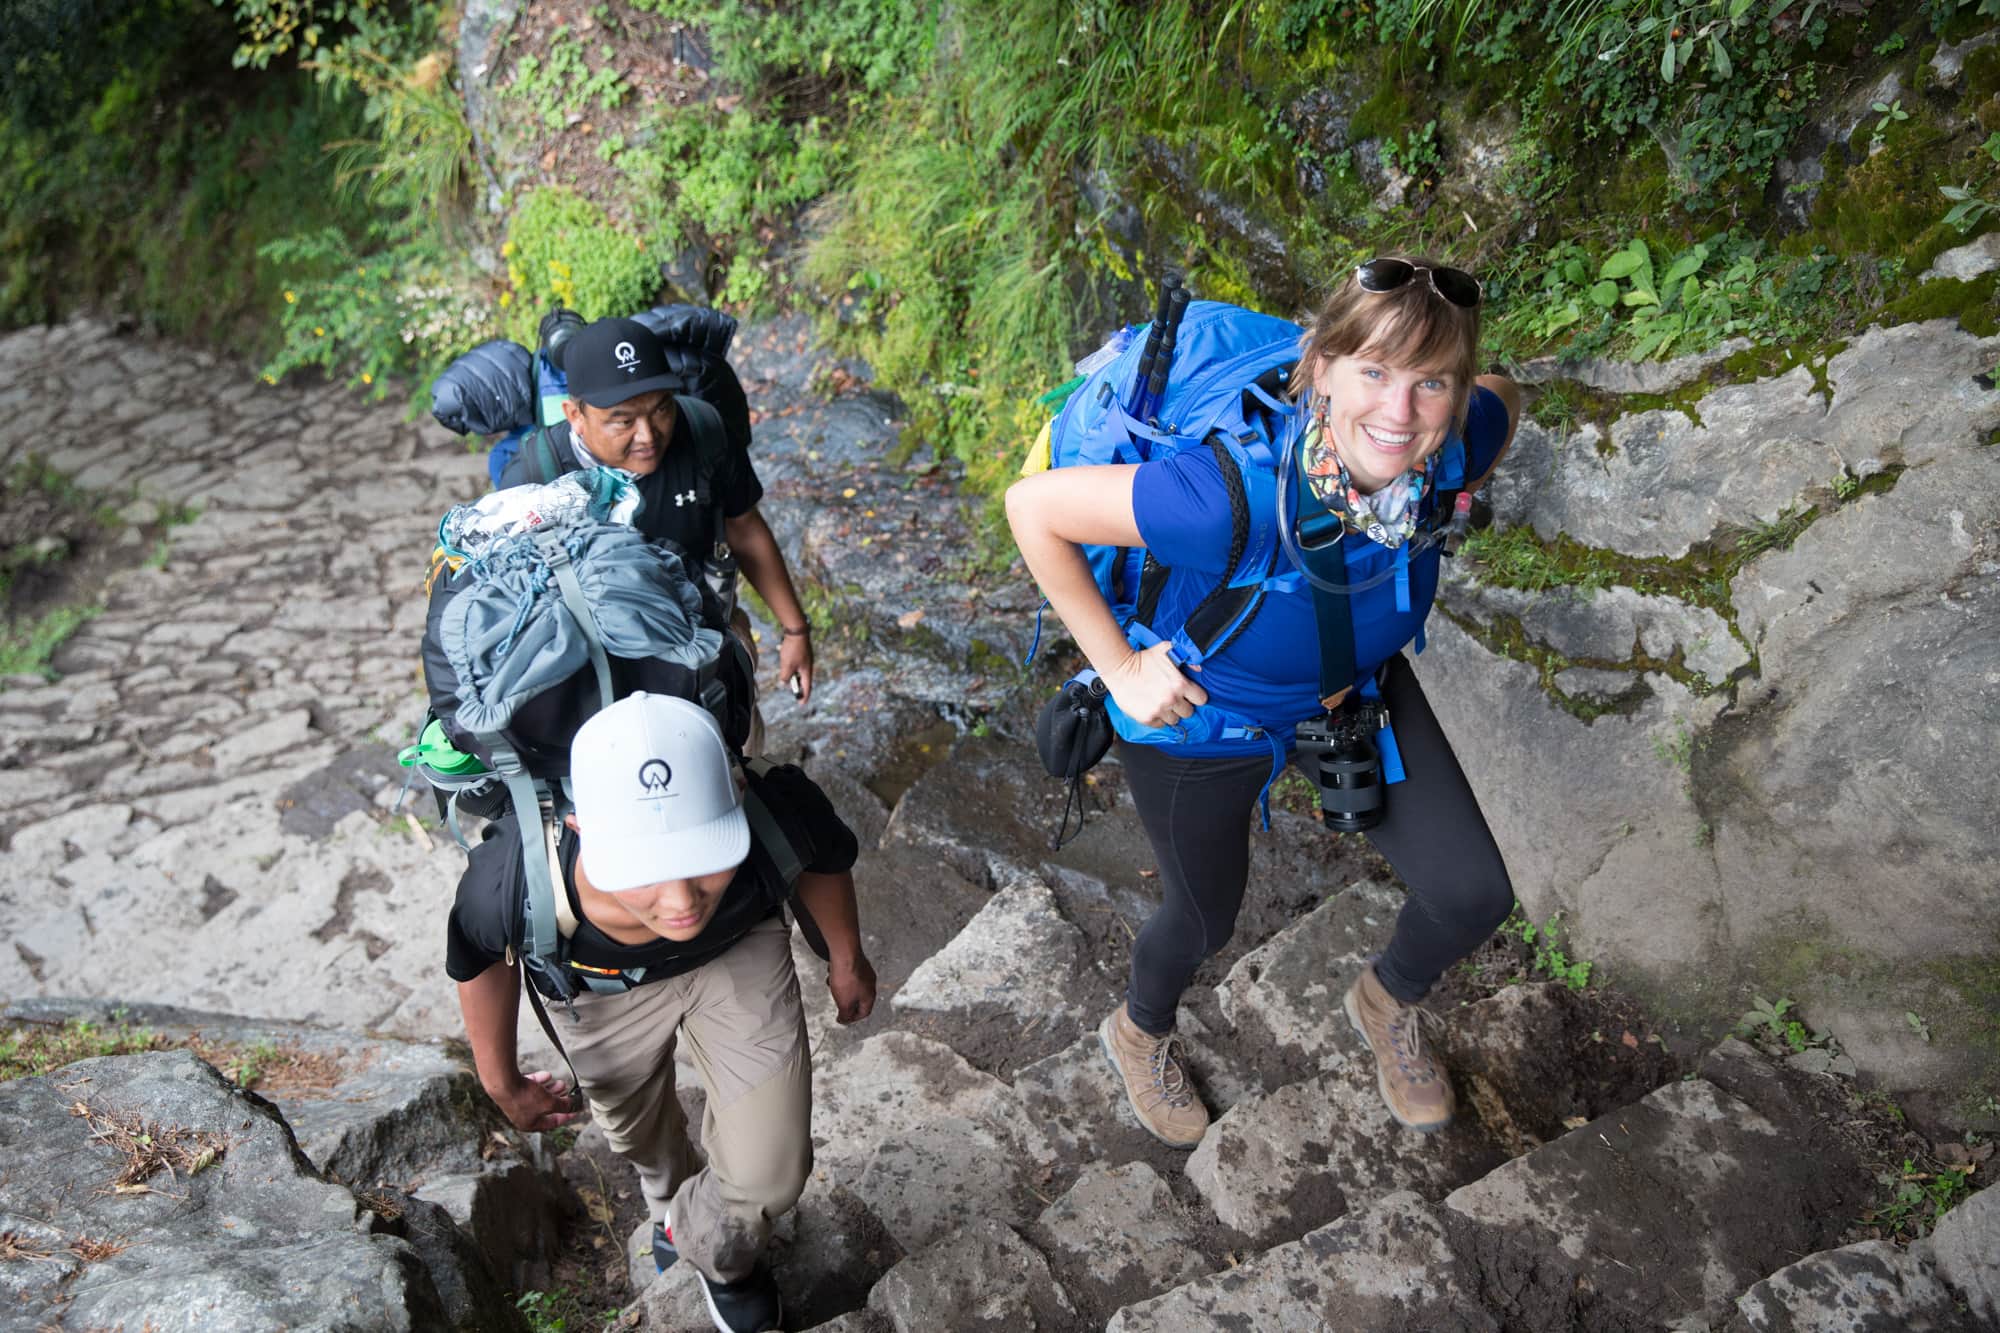 克里斯汀背着背包爬上陡峭的石阶。另外两名背着大背包的徒步旅行者在她旁边徒步。